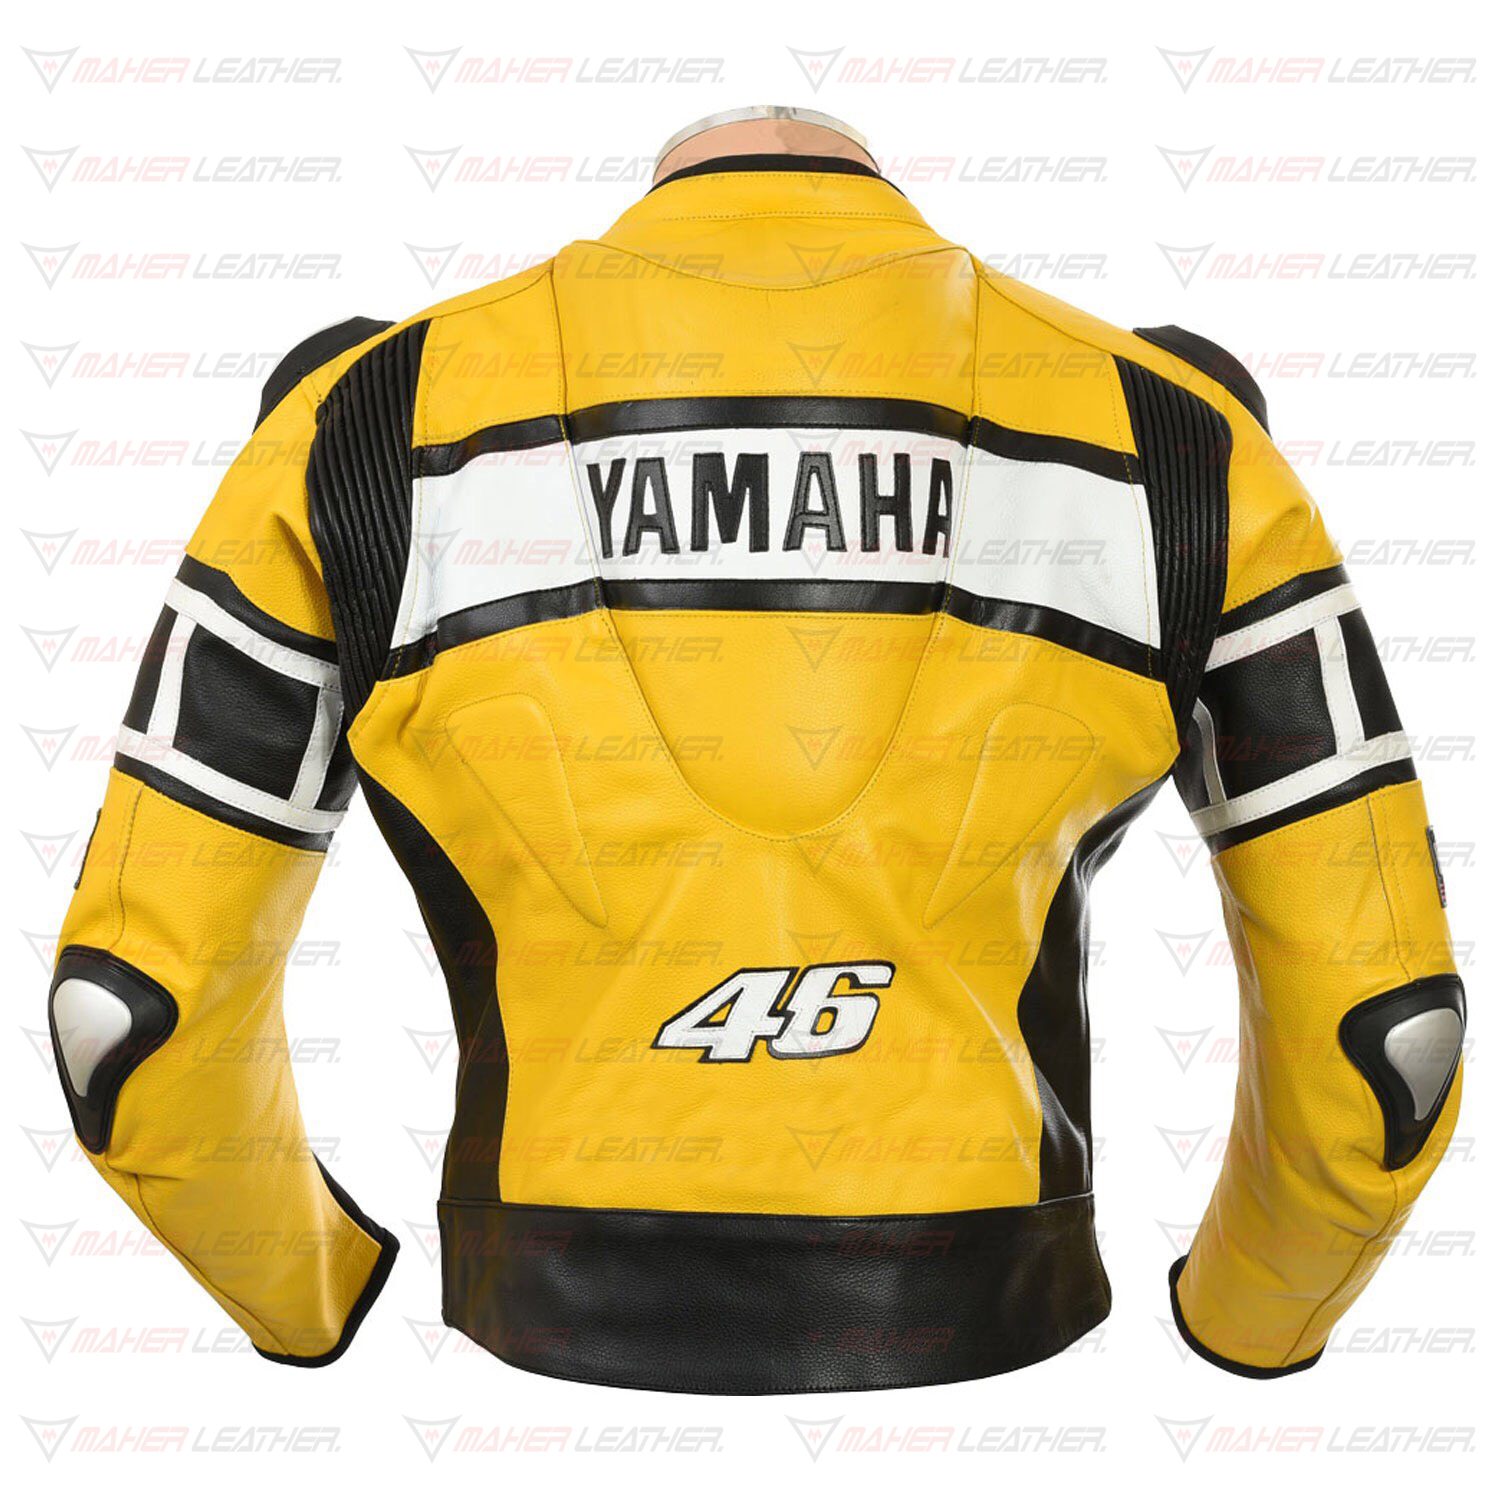 The back side look Yamaha leather riding jacket